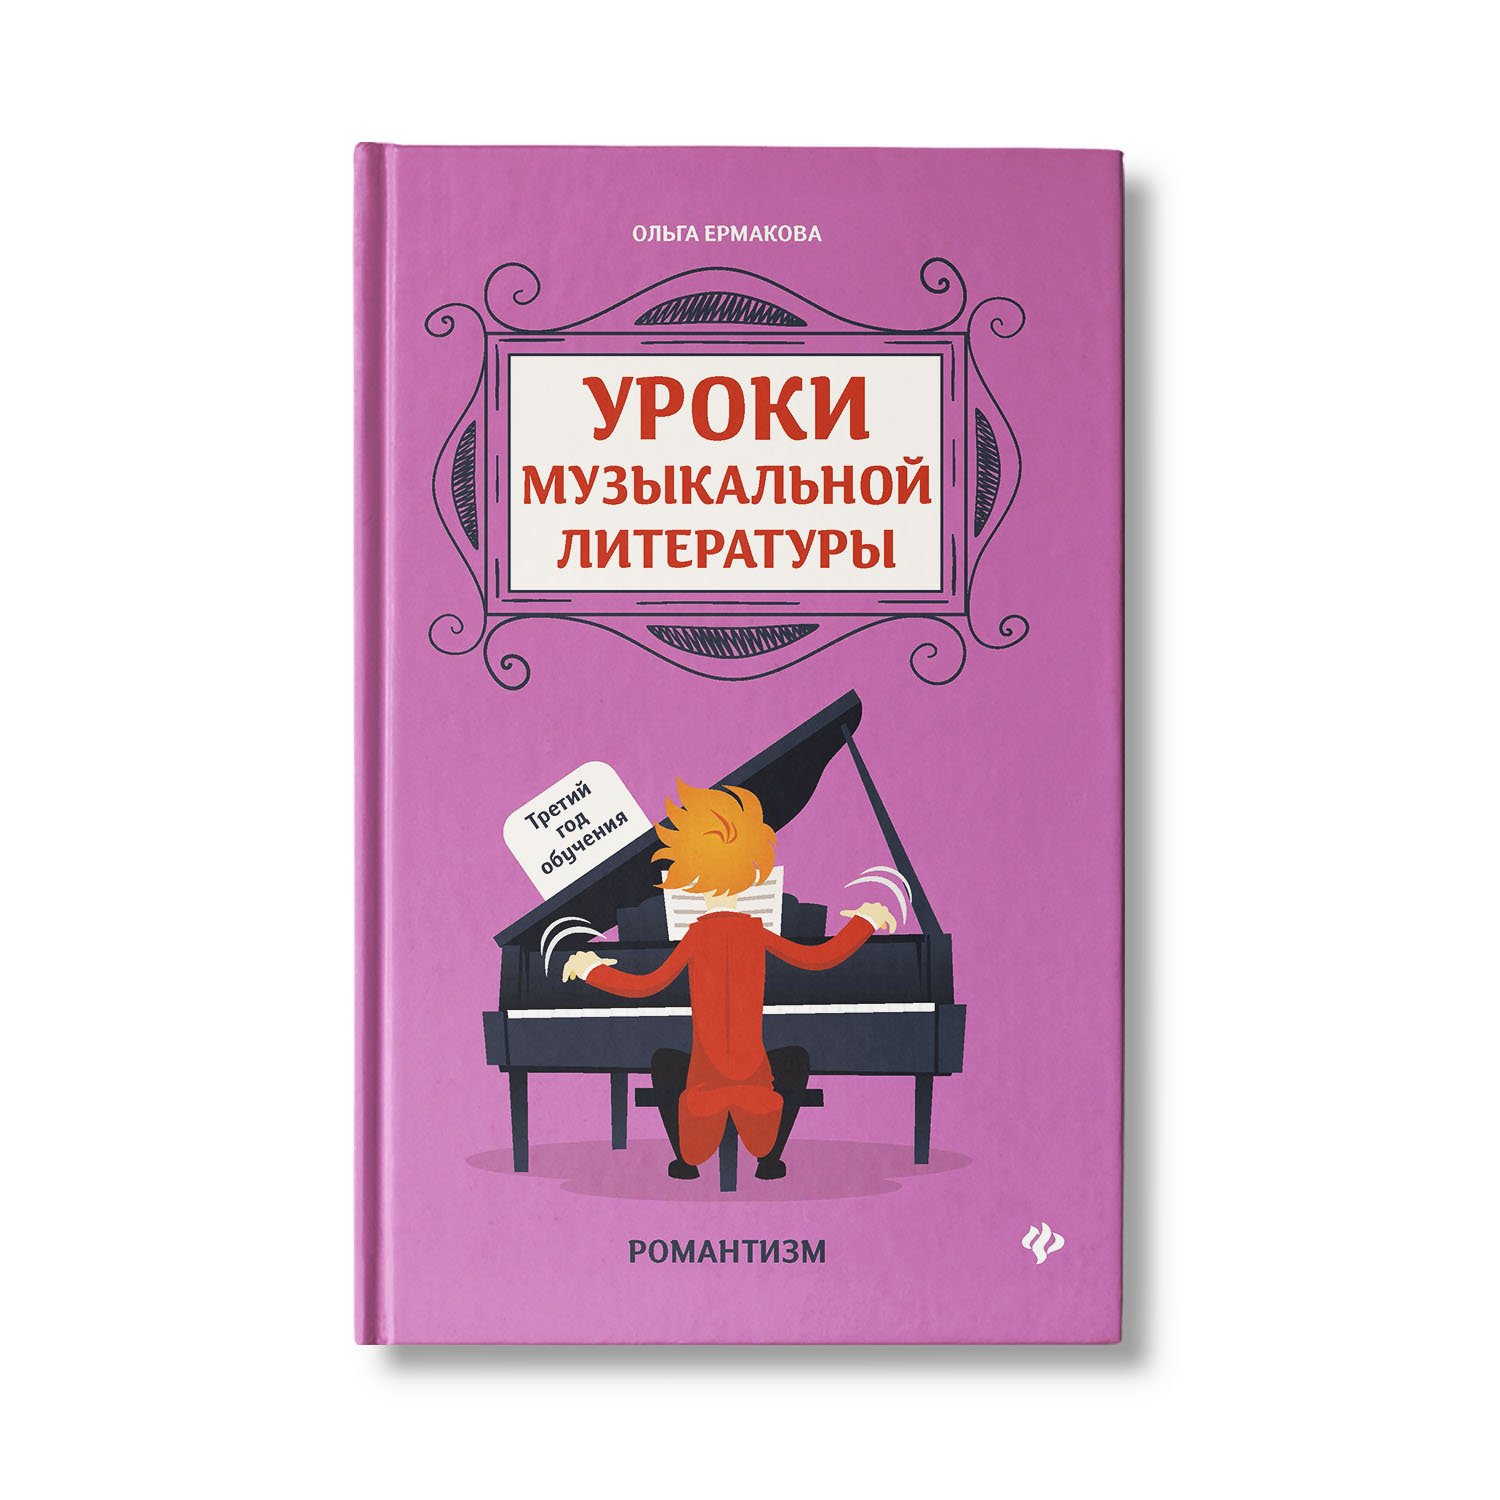 Книга Феникс Уроки музыкальной литературы: 3 год обучения. Романтизм - фото 1